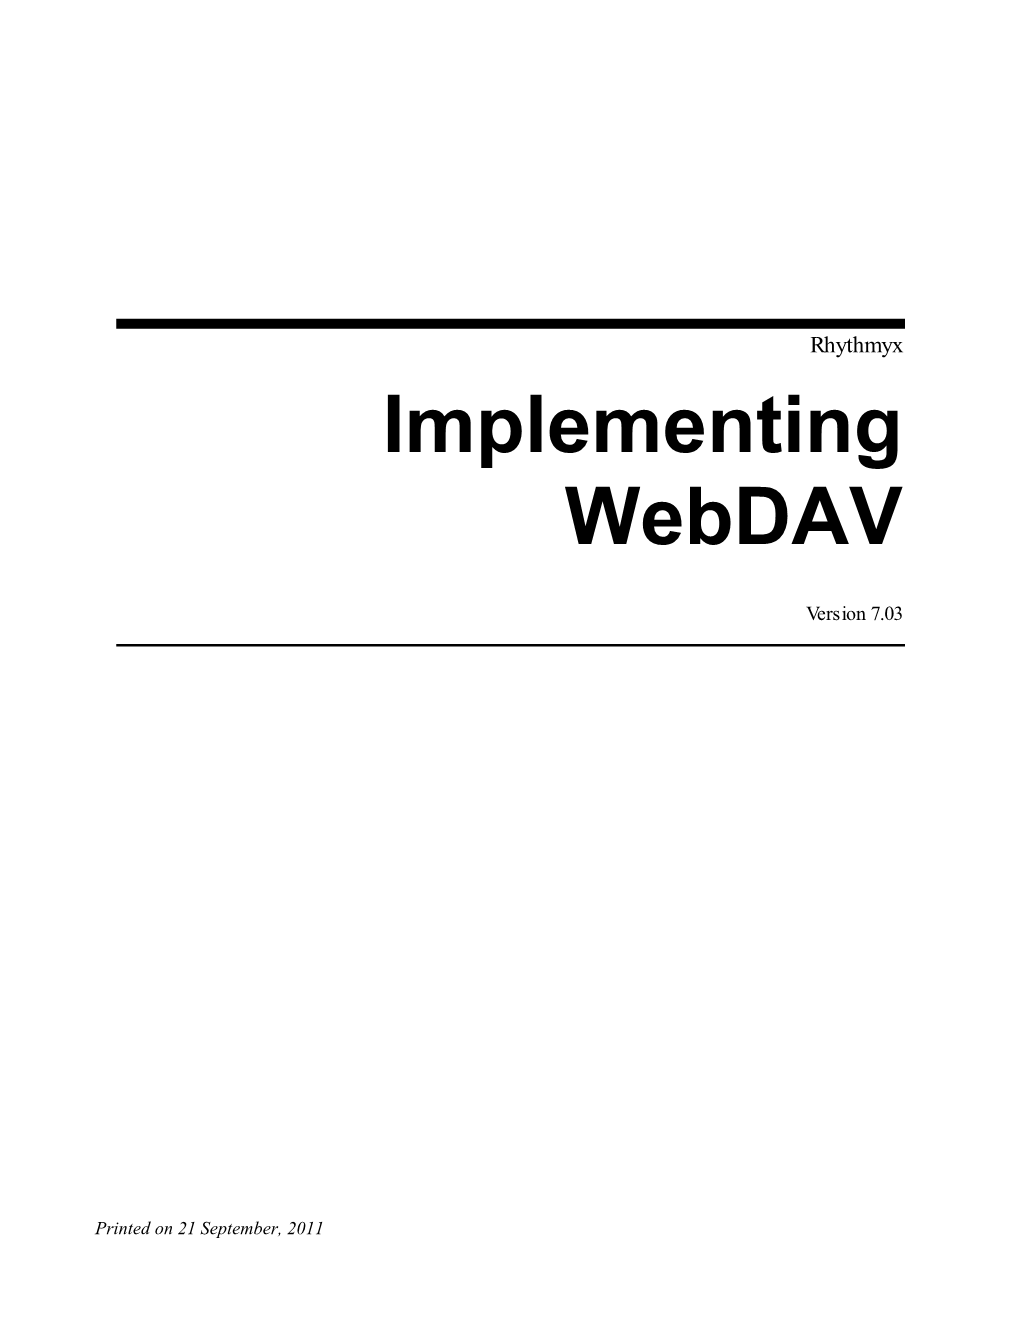 Implementing Webdav in Rhythmyx 7.0.3